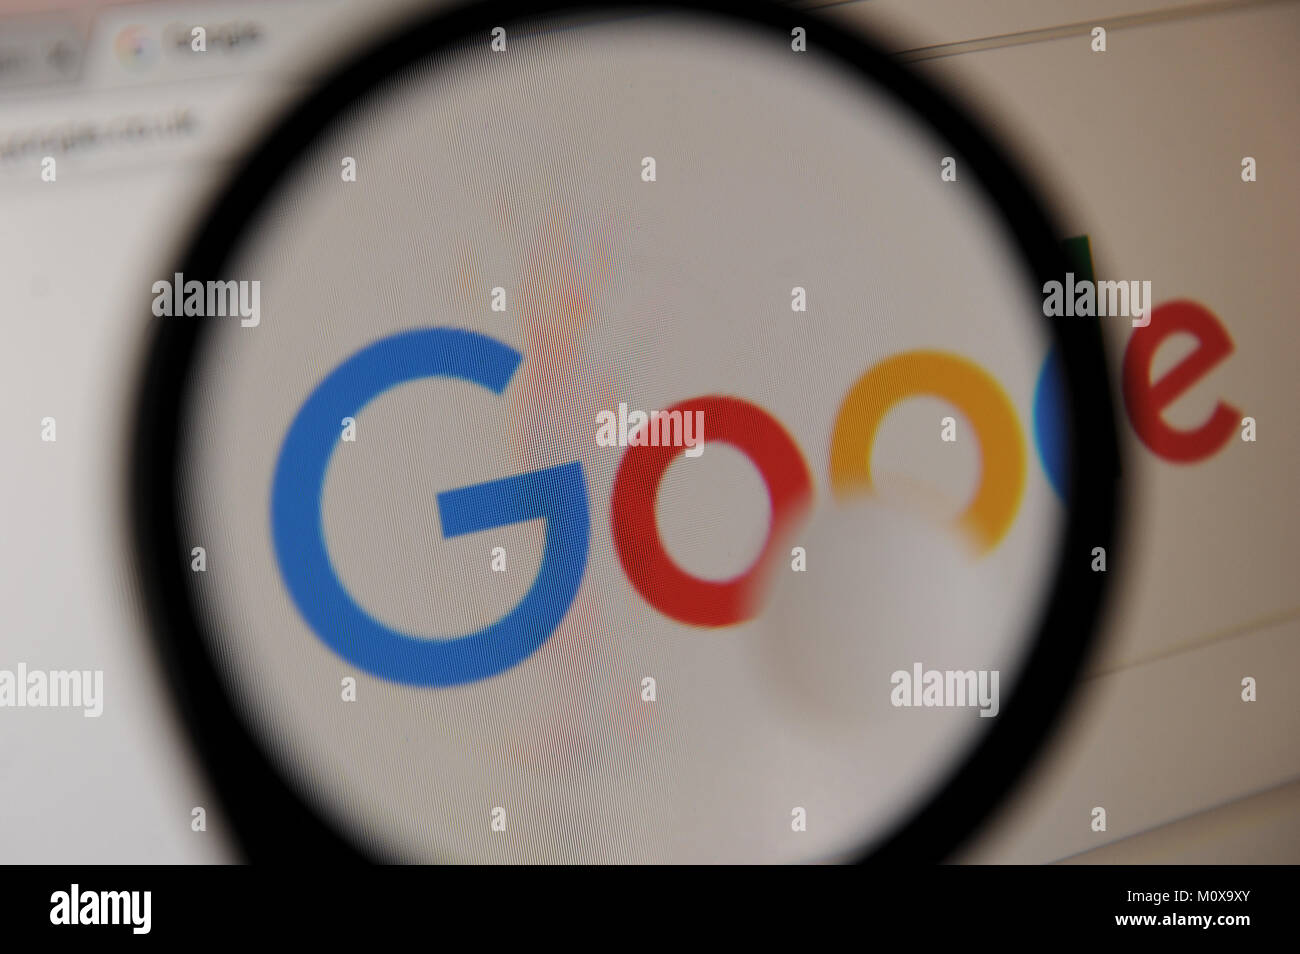 The Google logo seen through a magnifying glass Stock Photo